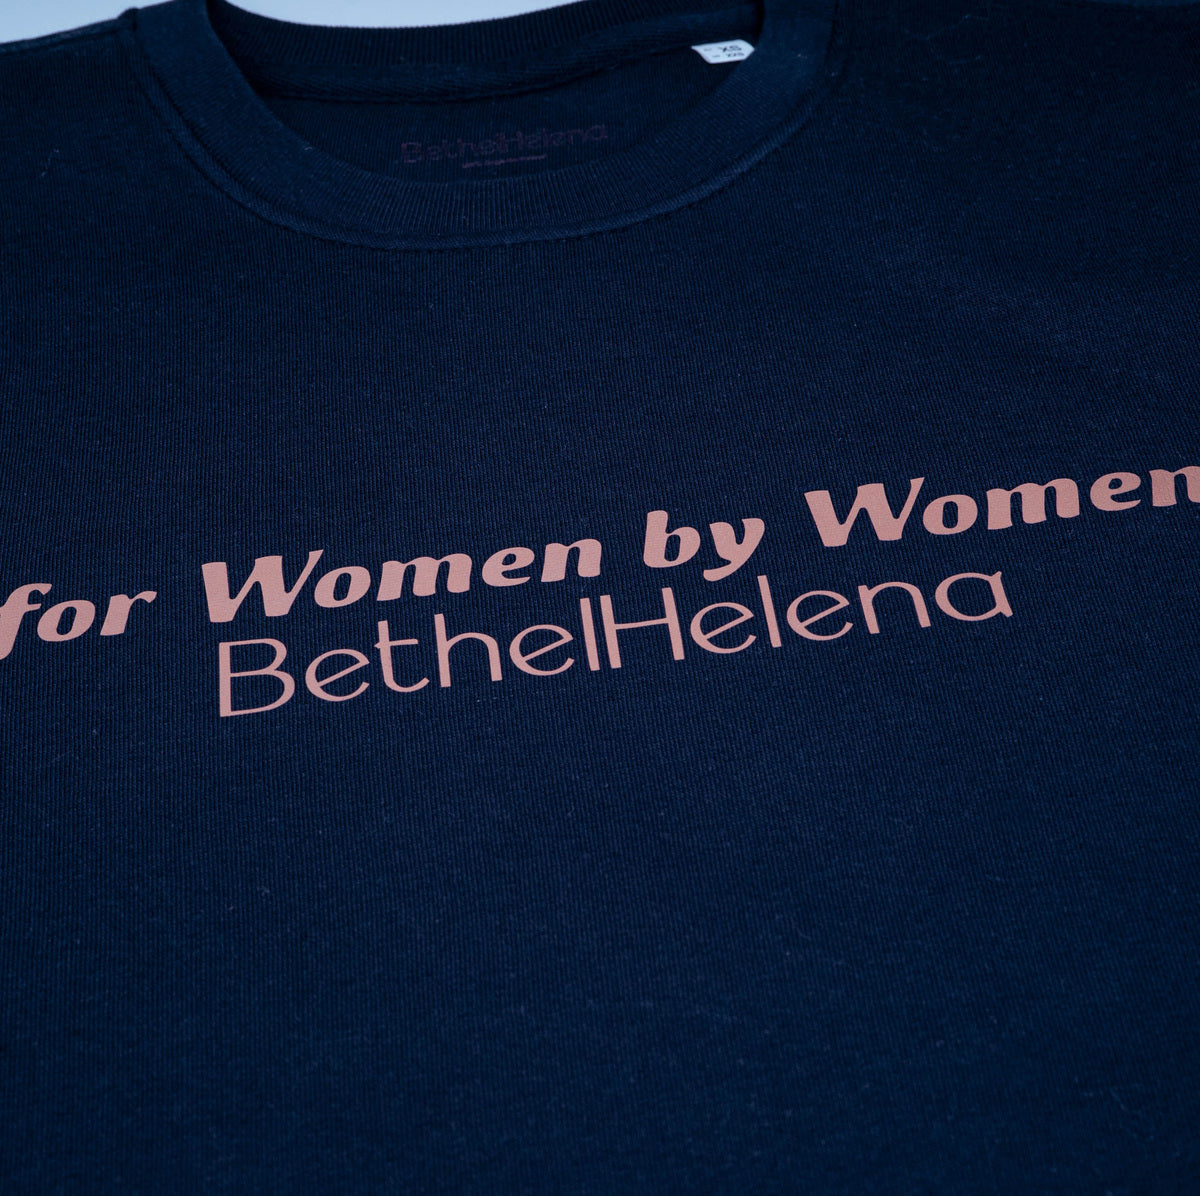 For Women by Women Sweatshirt in Navy Nights